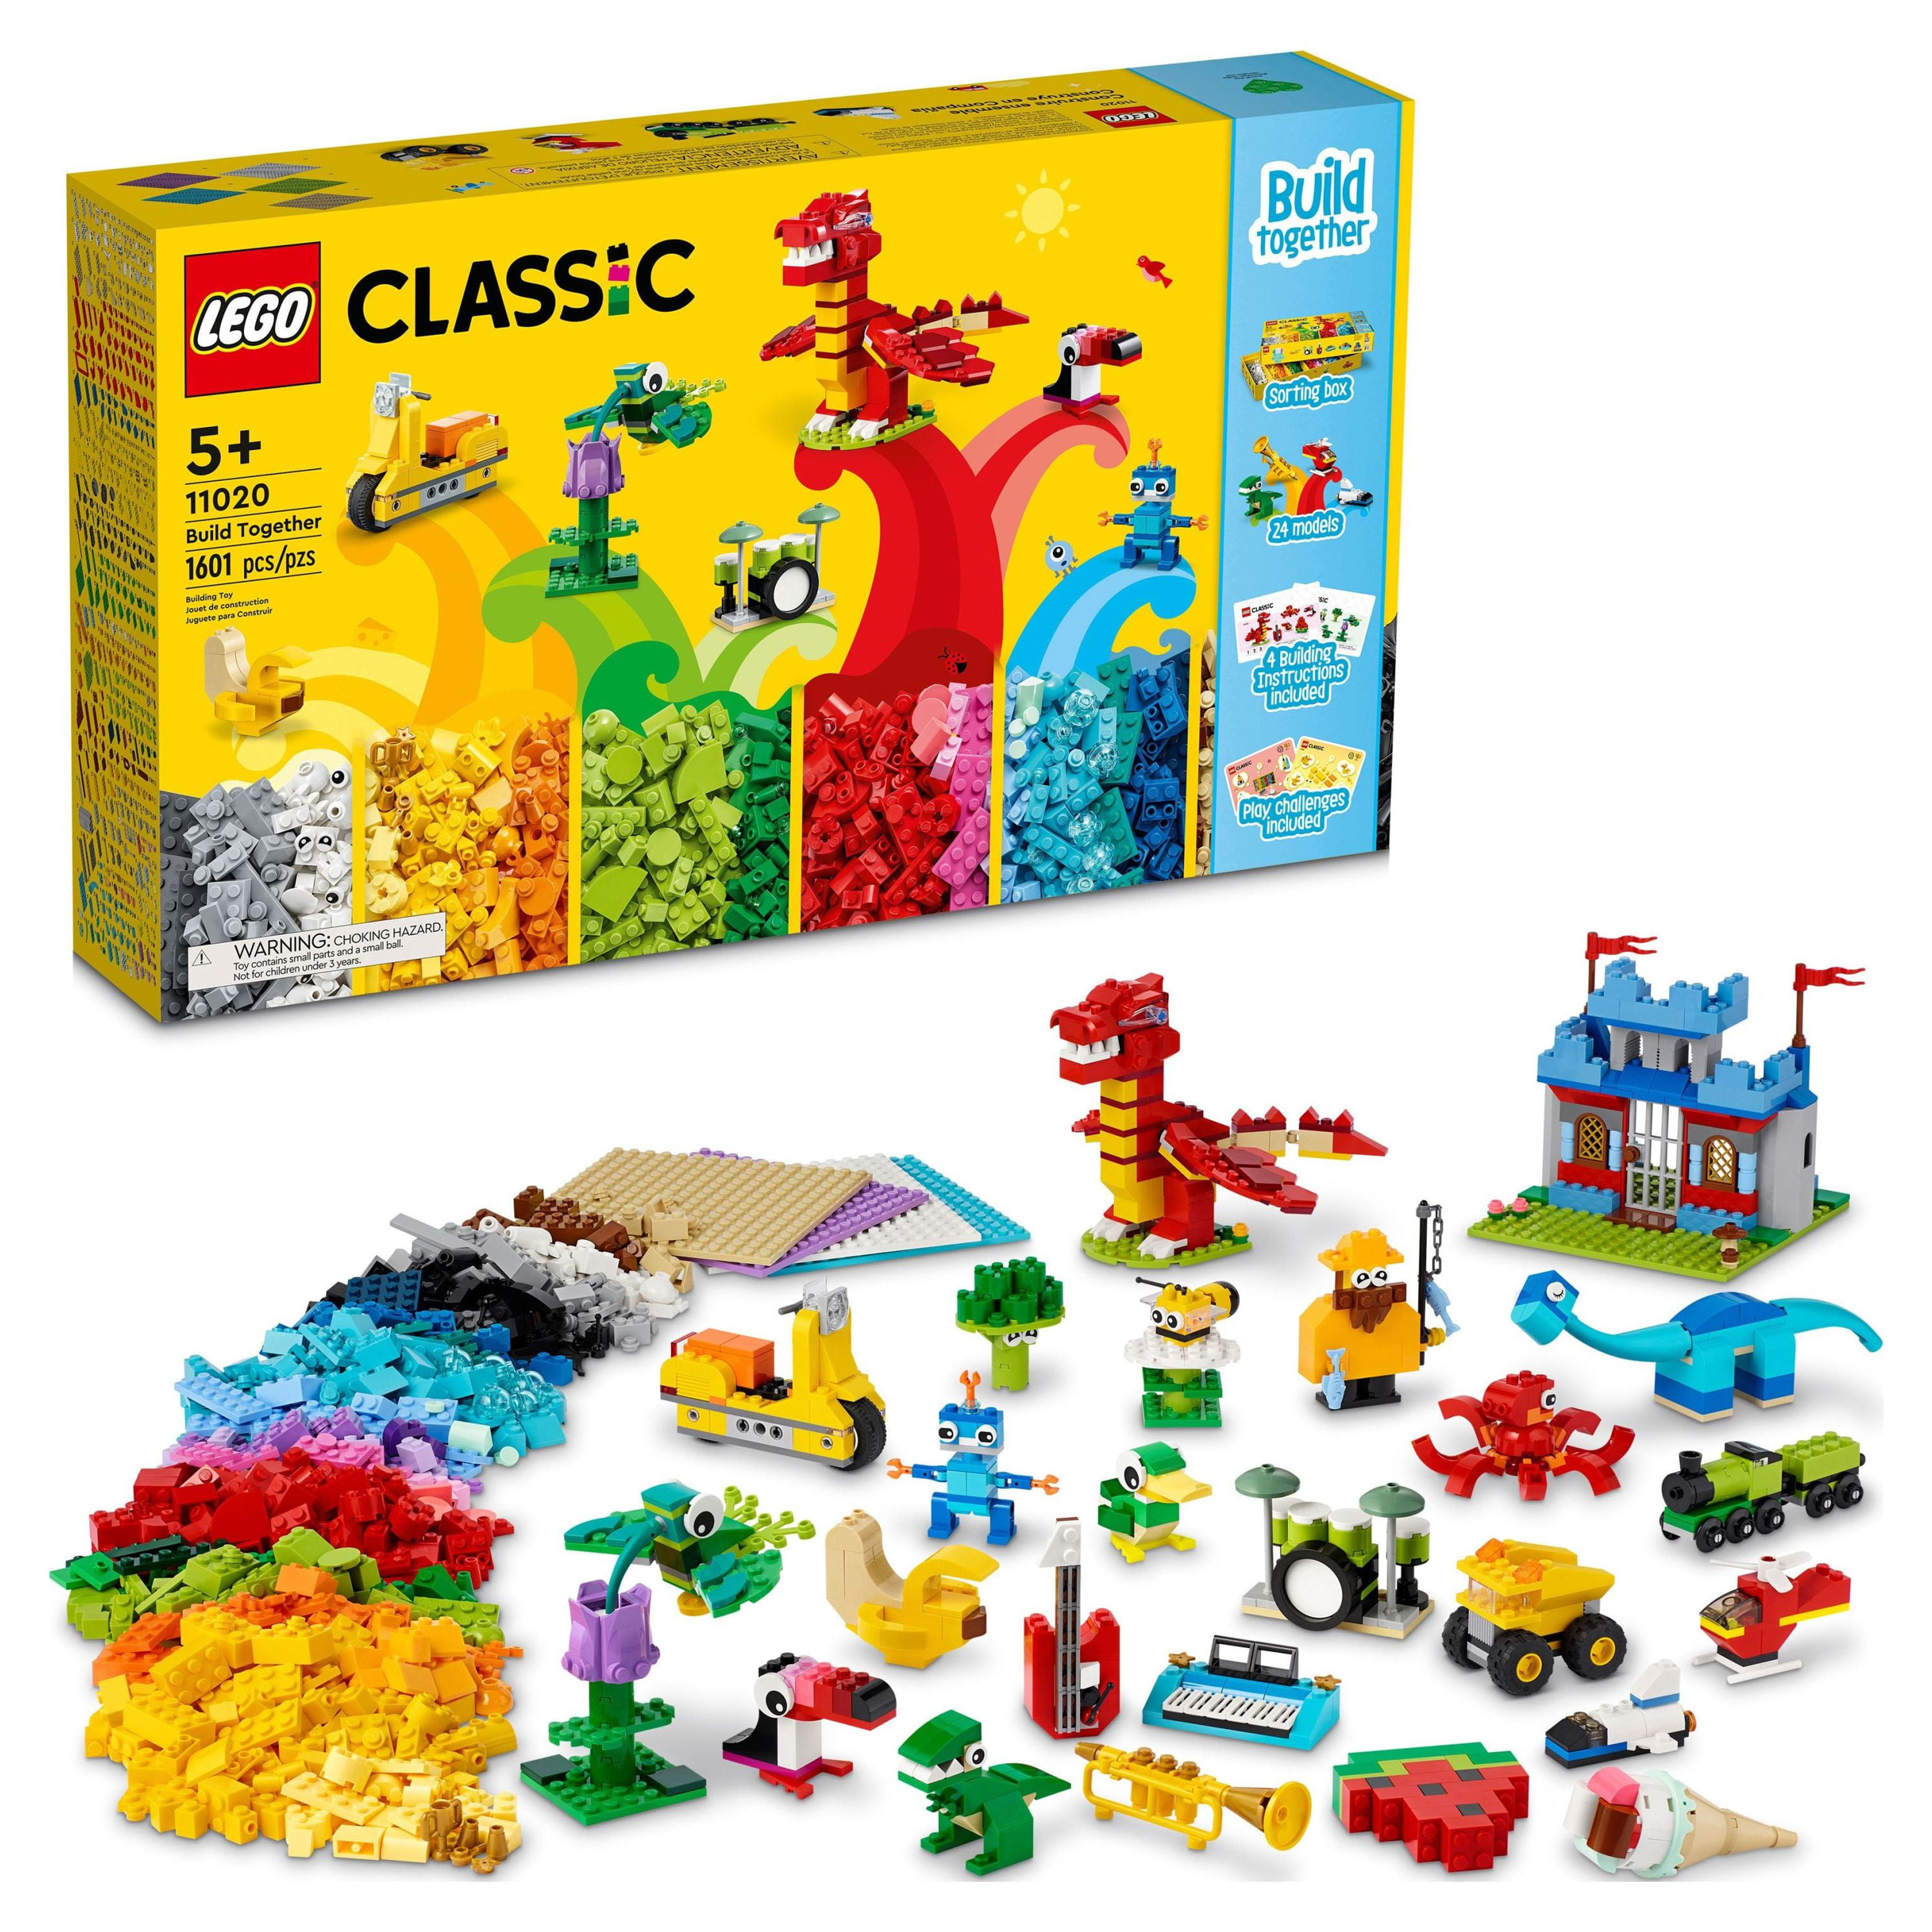 Boy Mama: Legos Organized- Check! - Boy Mama Teacher Mama